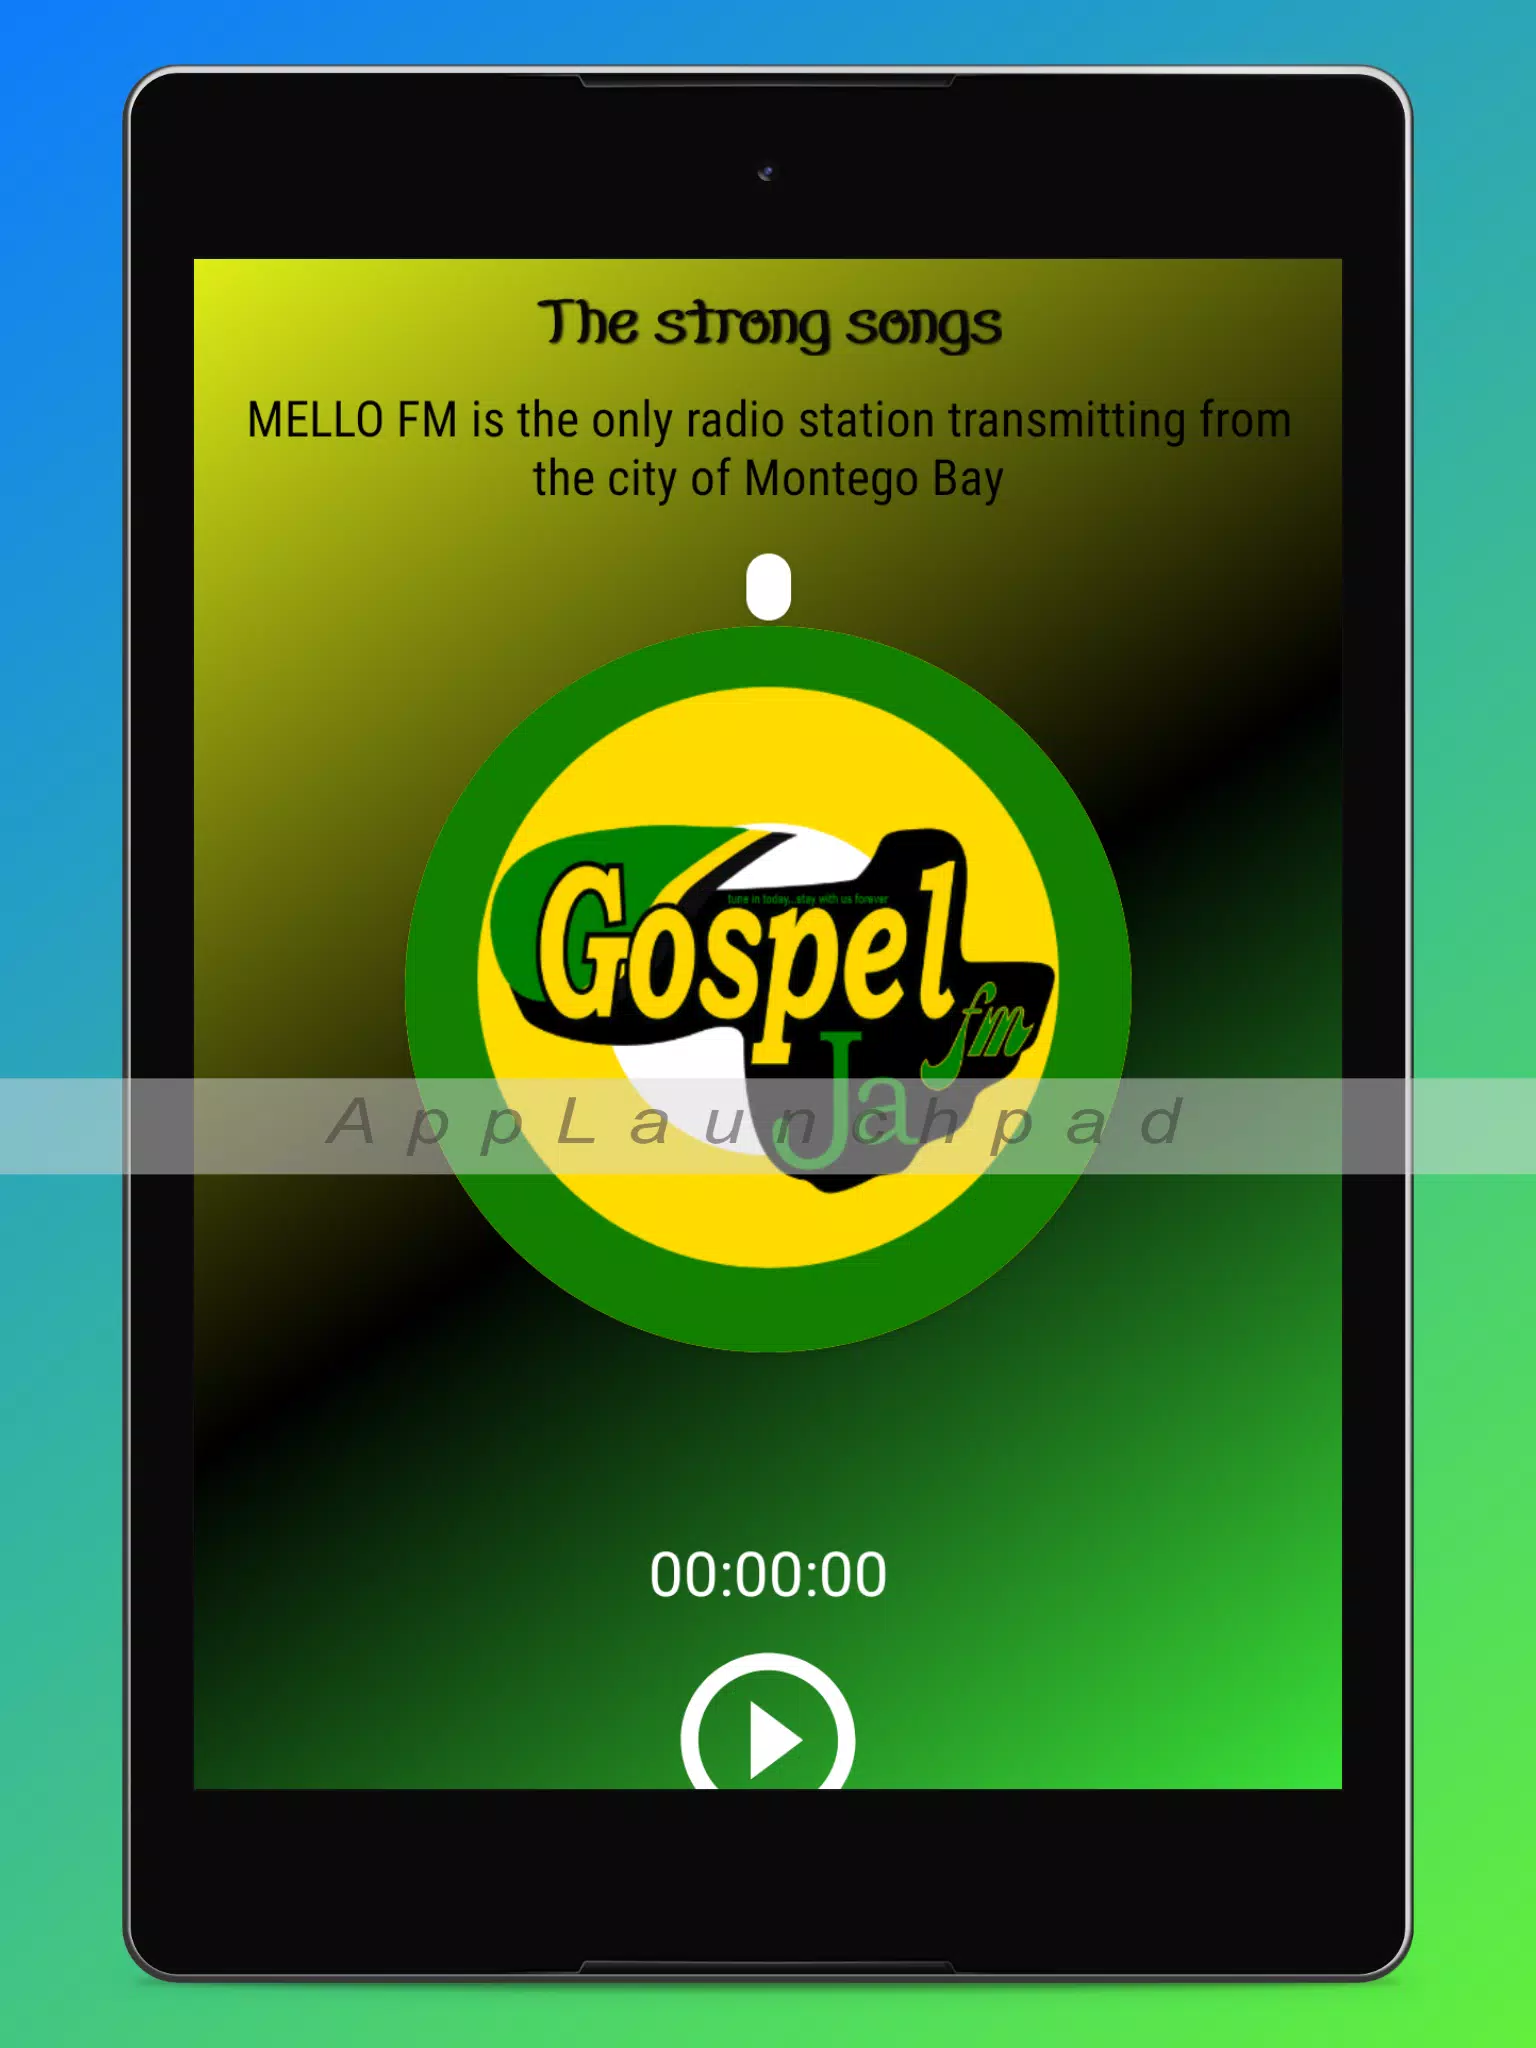 Gospel Ja FM live  Listen online at